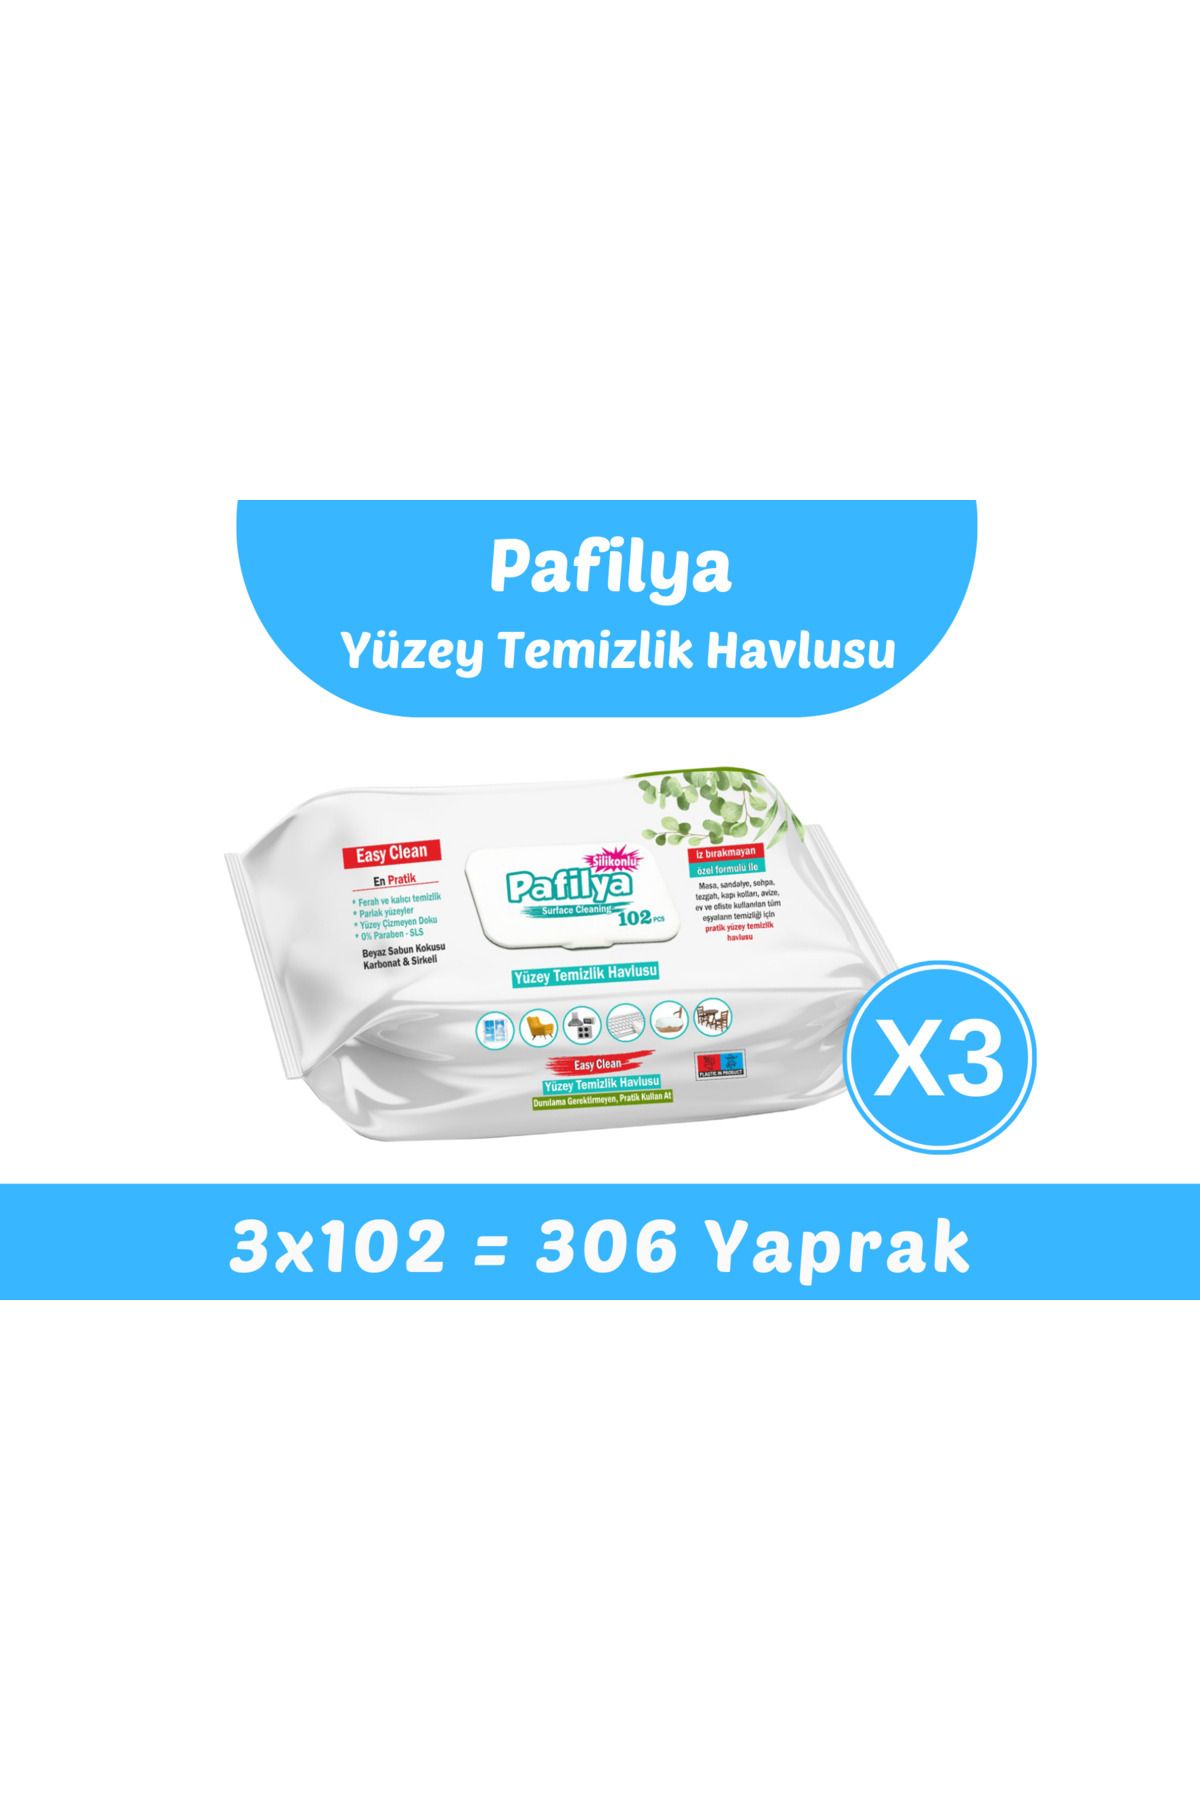 Pafilya Easy Clean Yüzey Temizlik Havlusu 3x102 (306 Yaprak)